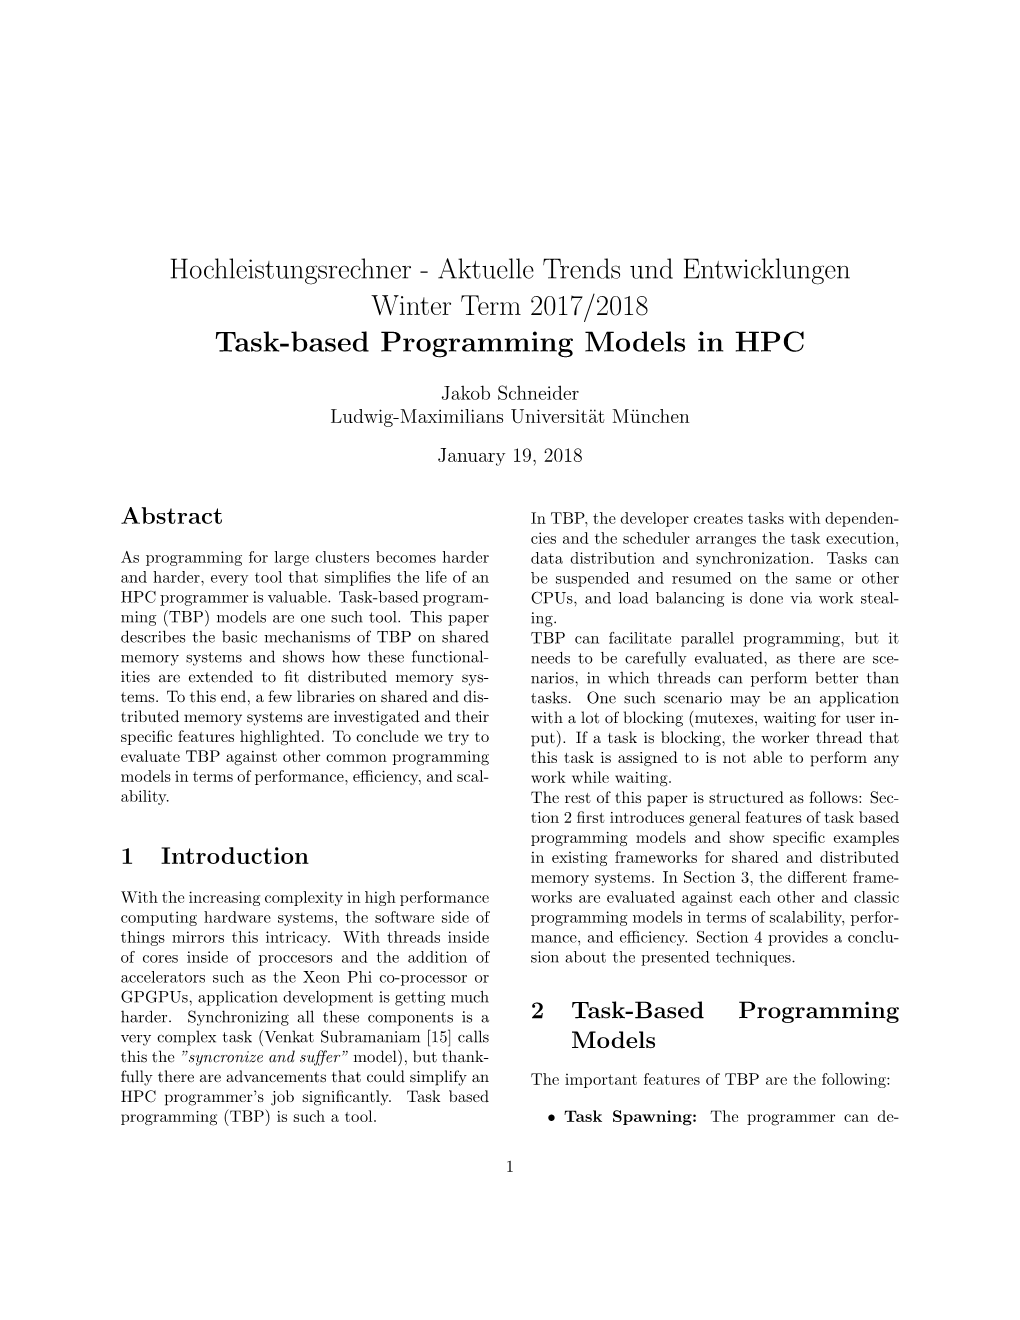 Hochleistungsrechner - Aktuelle Trends Und Entwicklungen Winter Term 2017/2018 Task-Based Programming Models in HPC